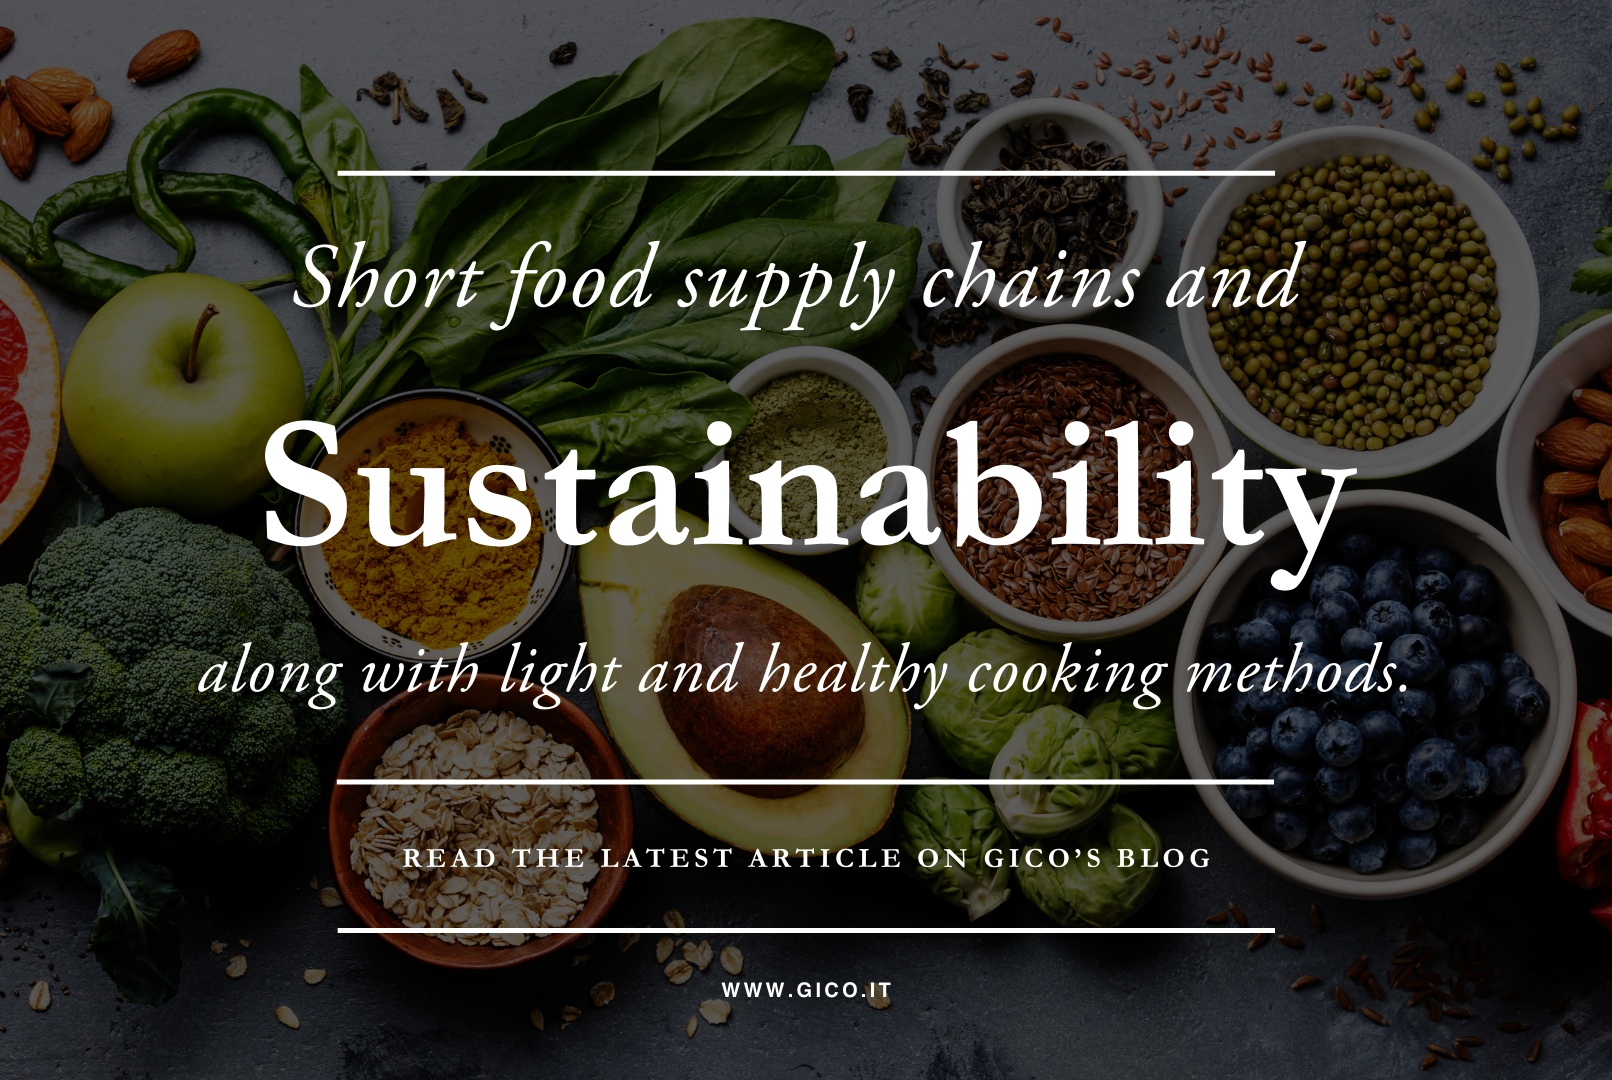 Filiera corta, sostenibilità, ma anche cotture leggere e sane. </br> GICO al servizio degli chef, guarda alle esigenze di oggi e di domani